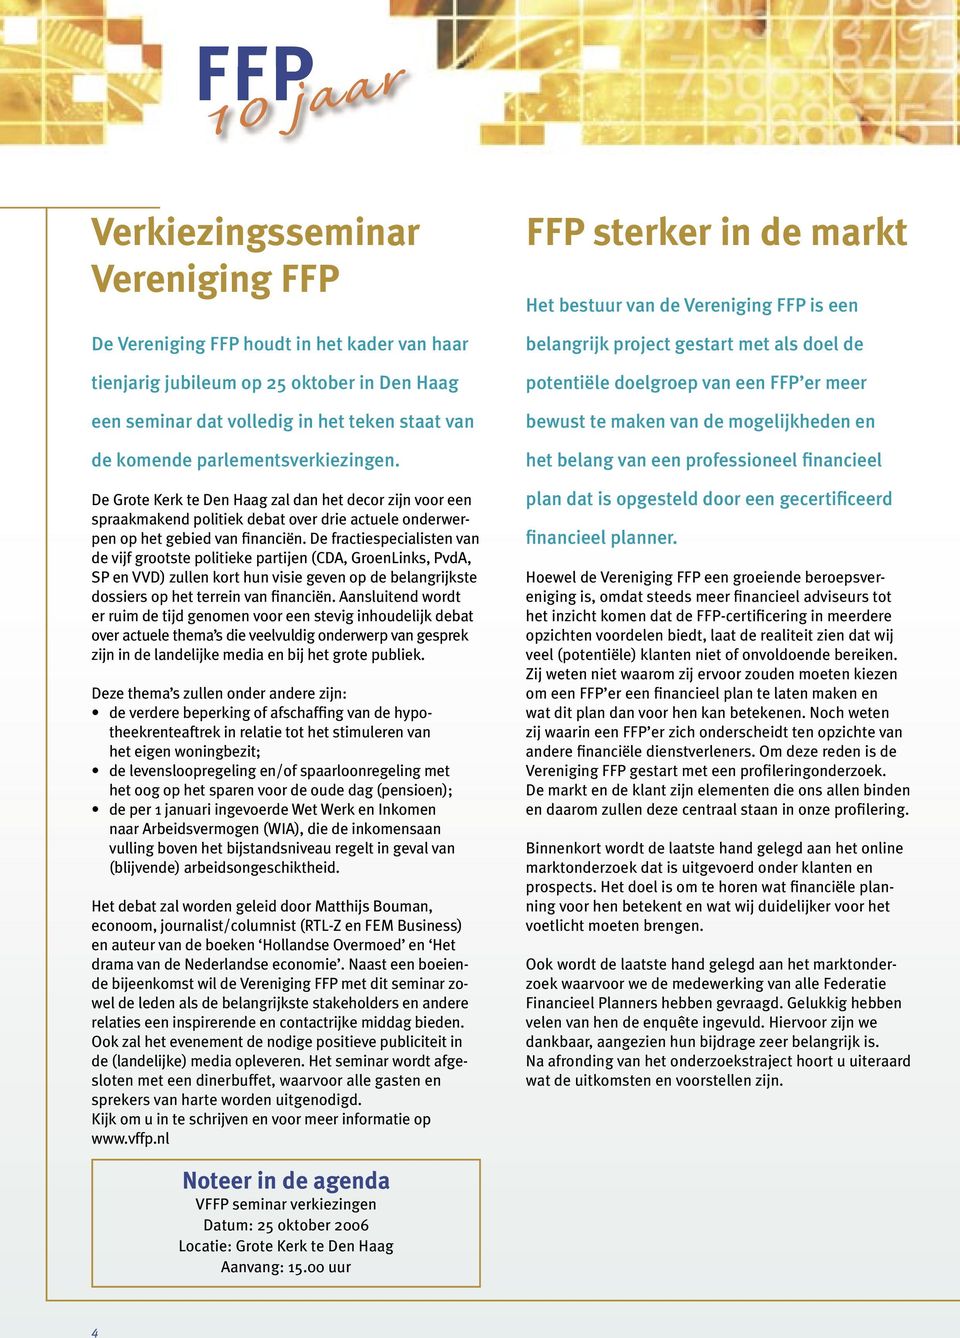 De fractiespecialisten van de vijf grootste politieke partijen (CDA, GroenLinks, PvdA, SP en VVD) zullen kort hun visie geven op de belangrijkste dossiers op het terrein van financiën.